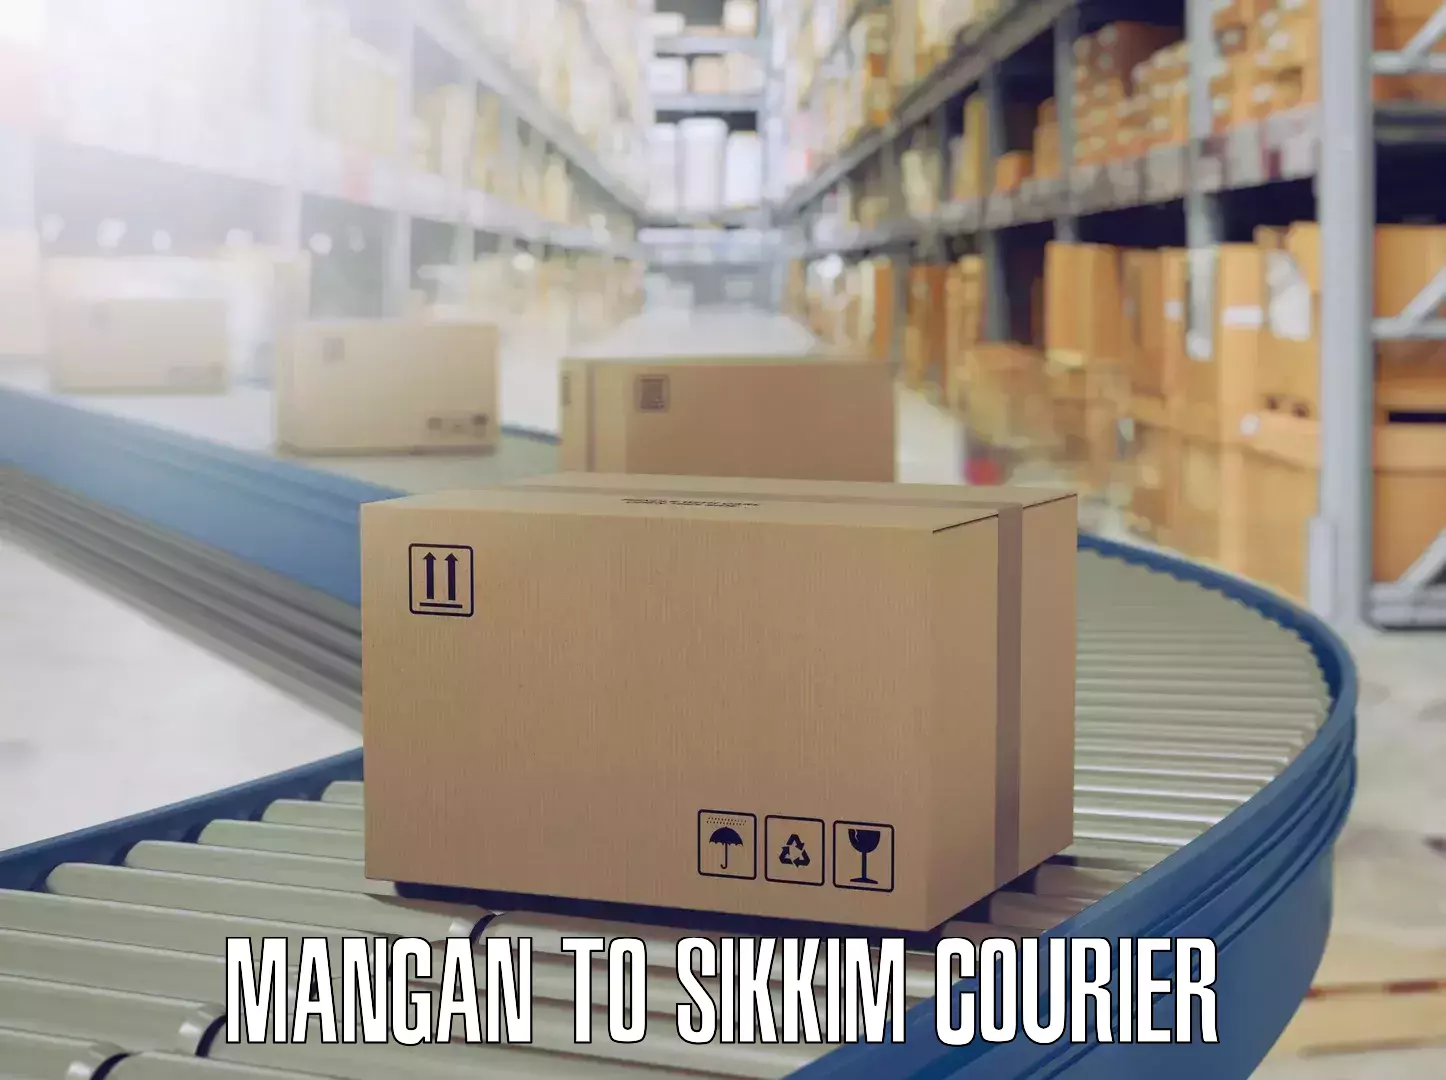 Efficient packing and moving Mangan to Mangan